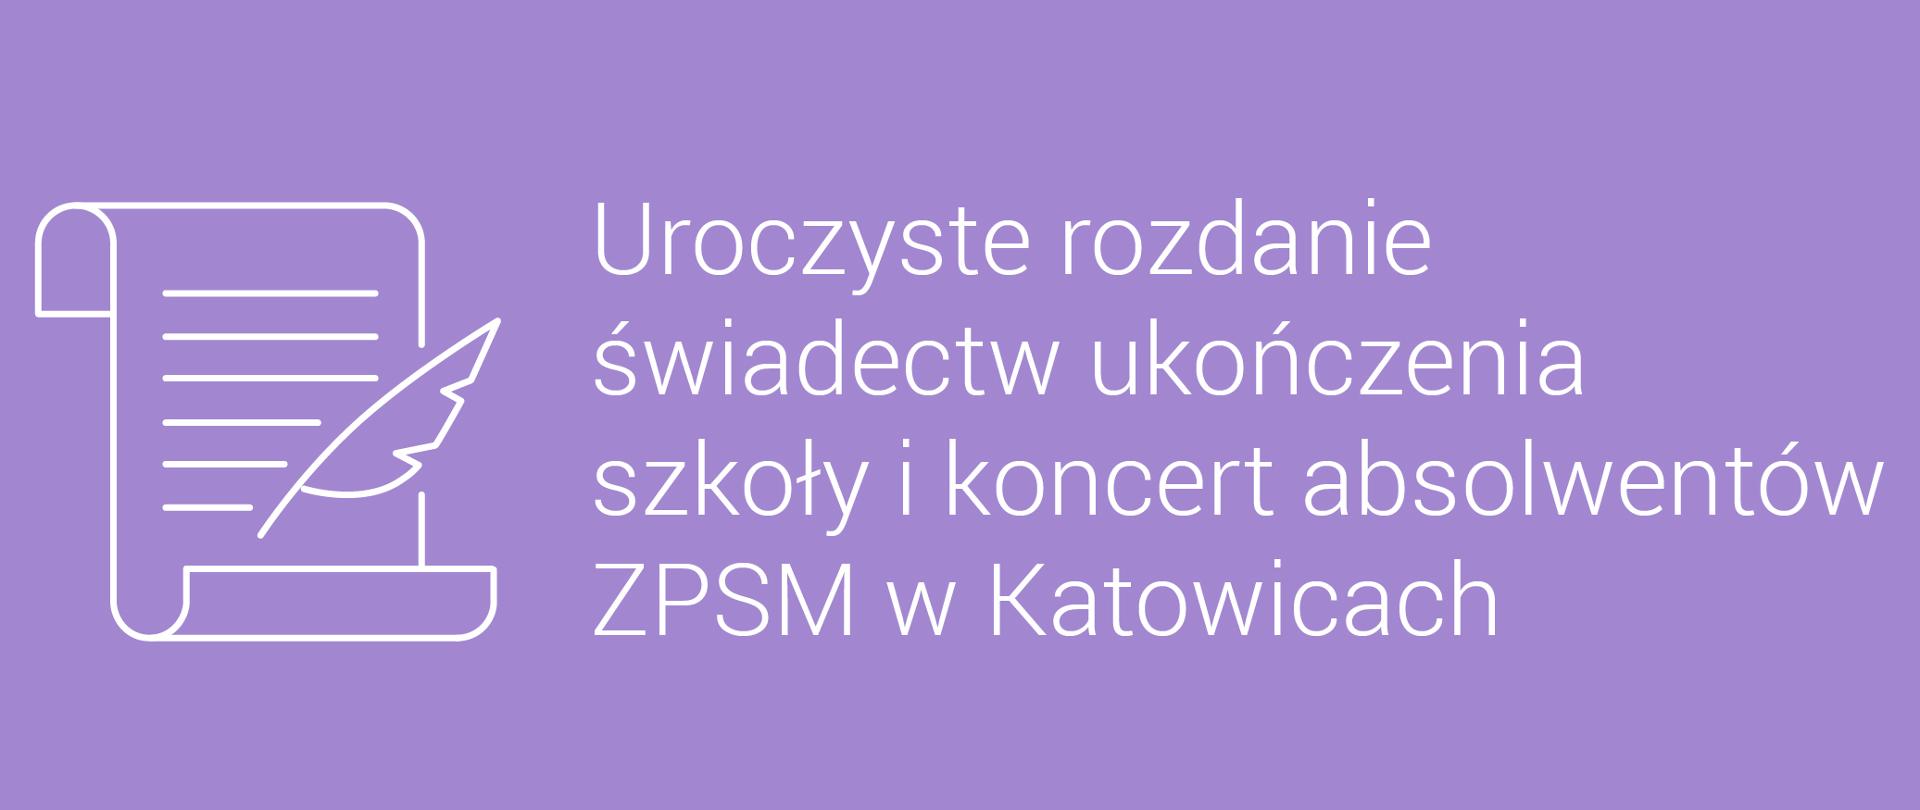 Biały napis na fioletowym tle "Uroczyste rozdanie świadectw ukończenia szkoły i koncert absolwentów ZPSM w Katowicach", z lewej strony biała ikona świadectwa